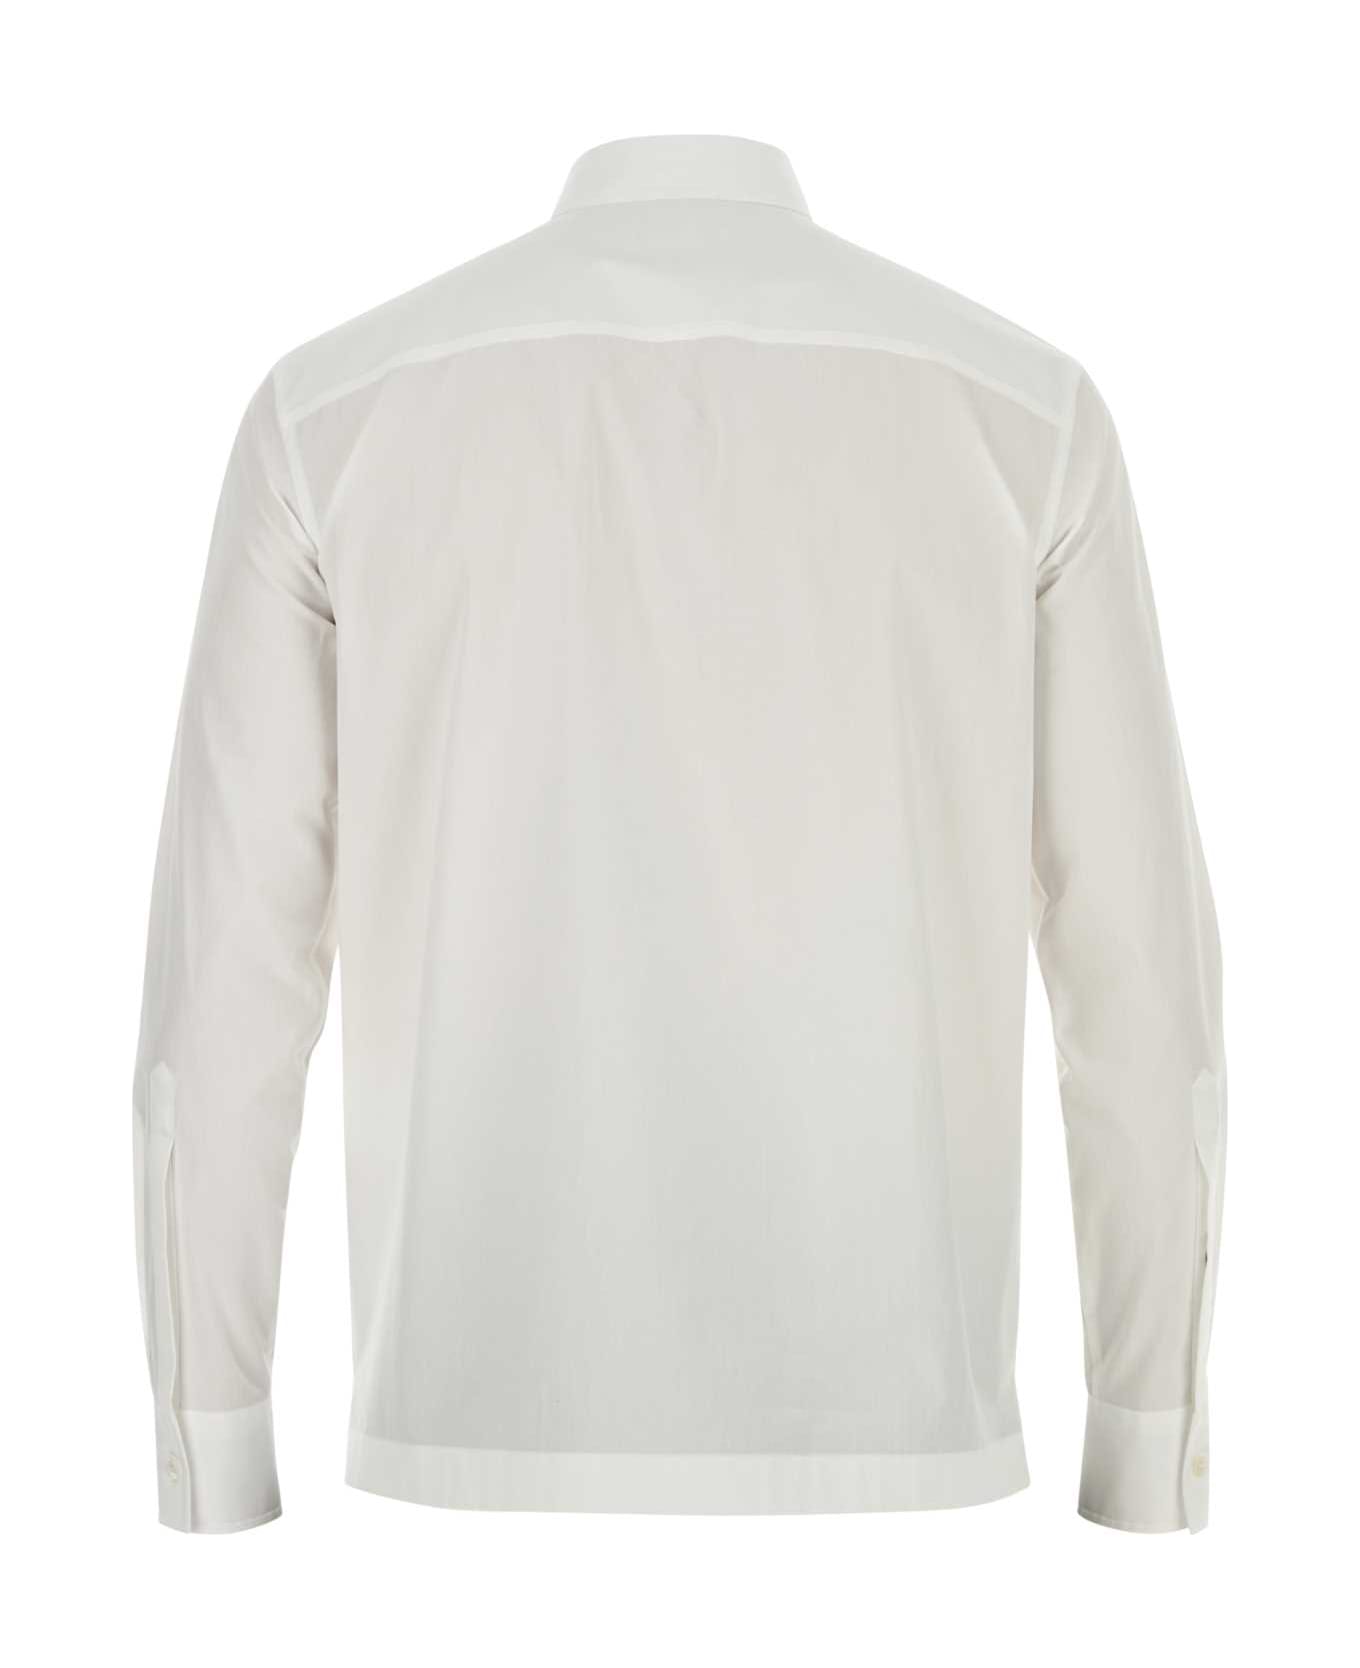 Valentino Garavani White Poplin Shirt - BIANCO シャツ